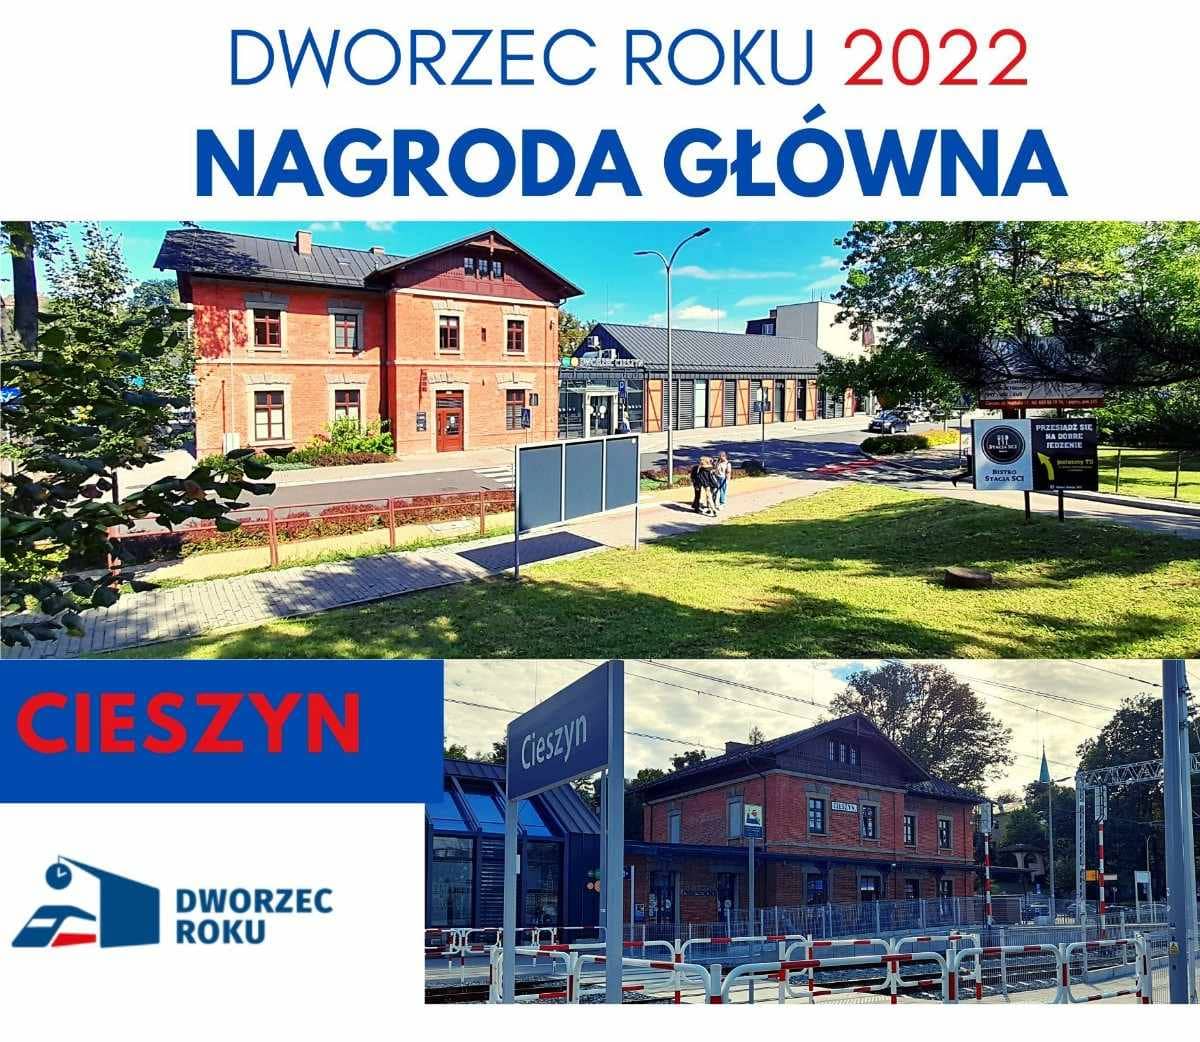 Dworzec kolejowy w Cieszynie Dworcem Roku 2022!